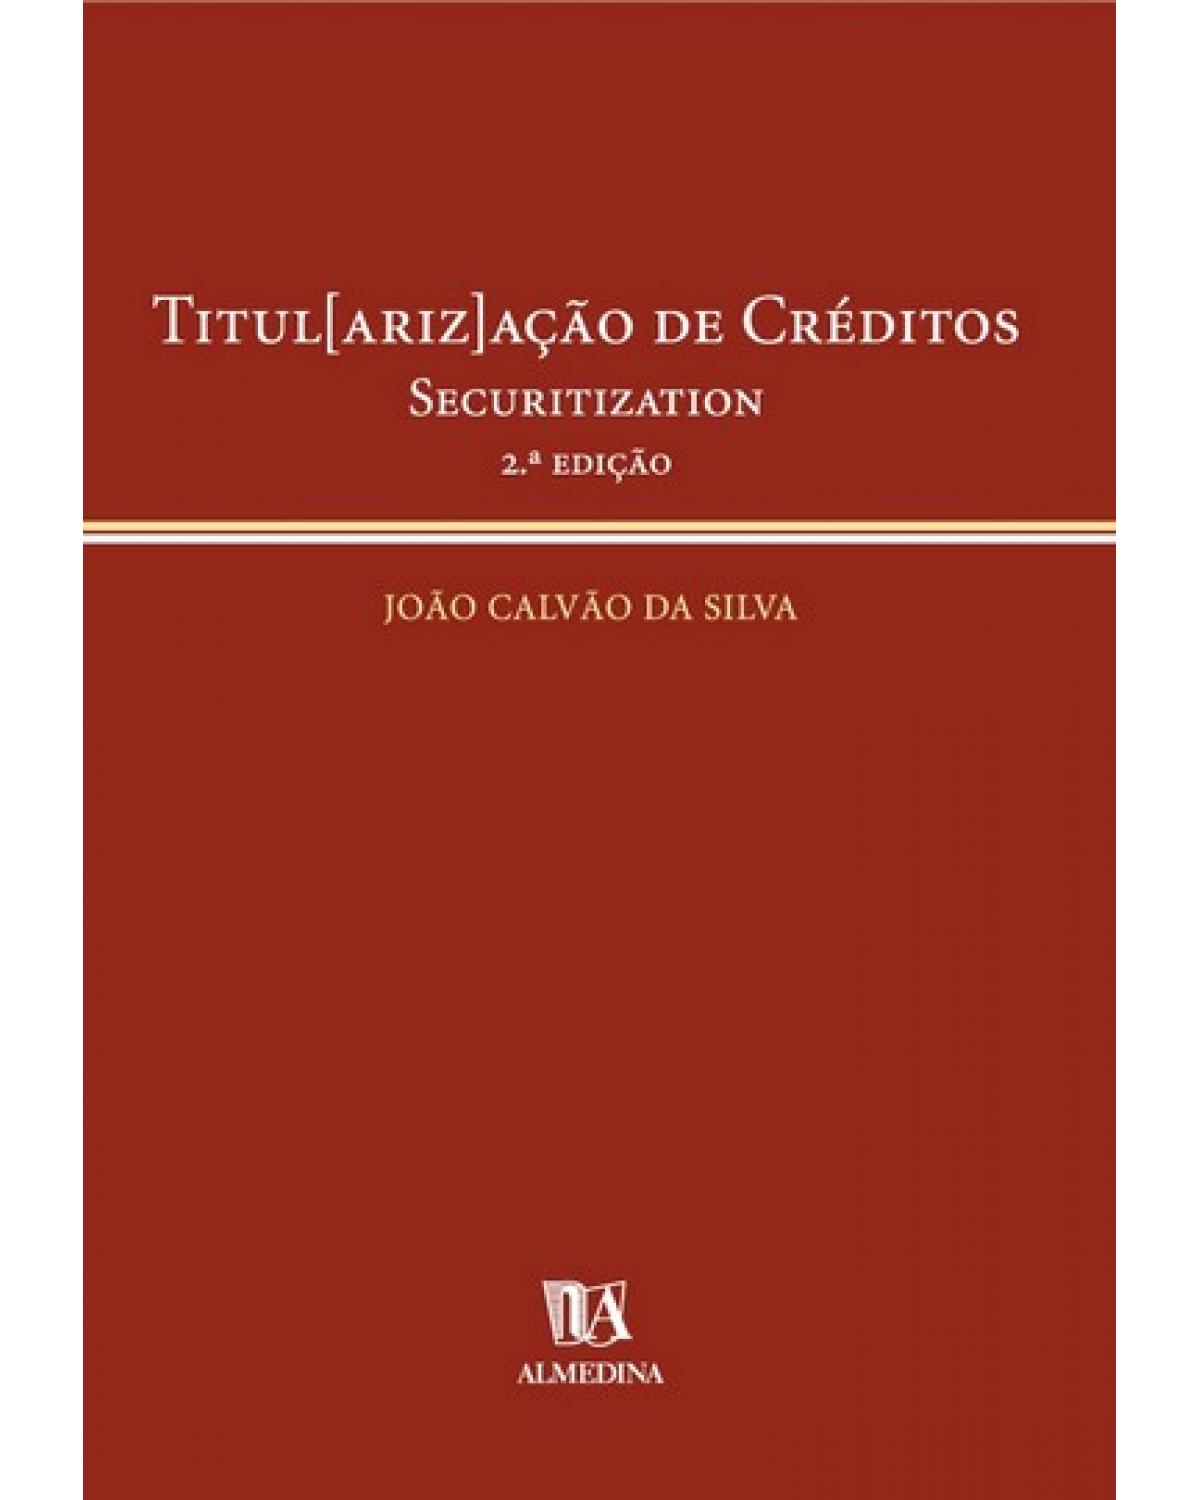 Titul[ariz]ação de créditos - securitization - 2ª Edição | 2005